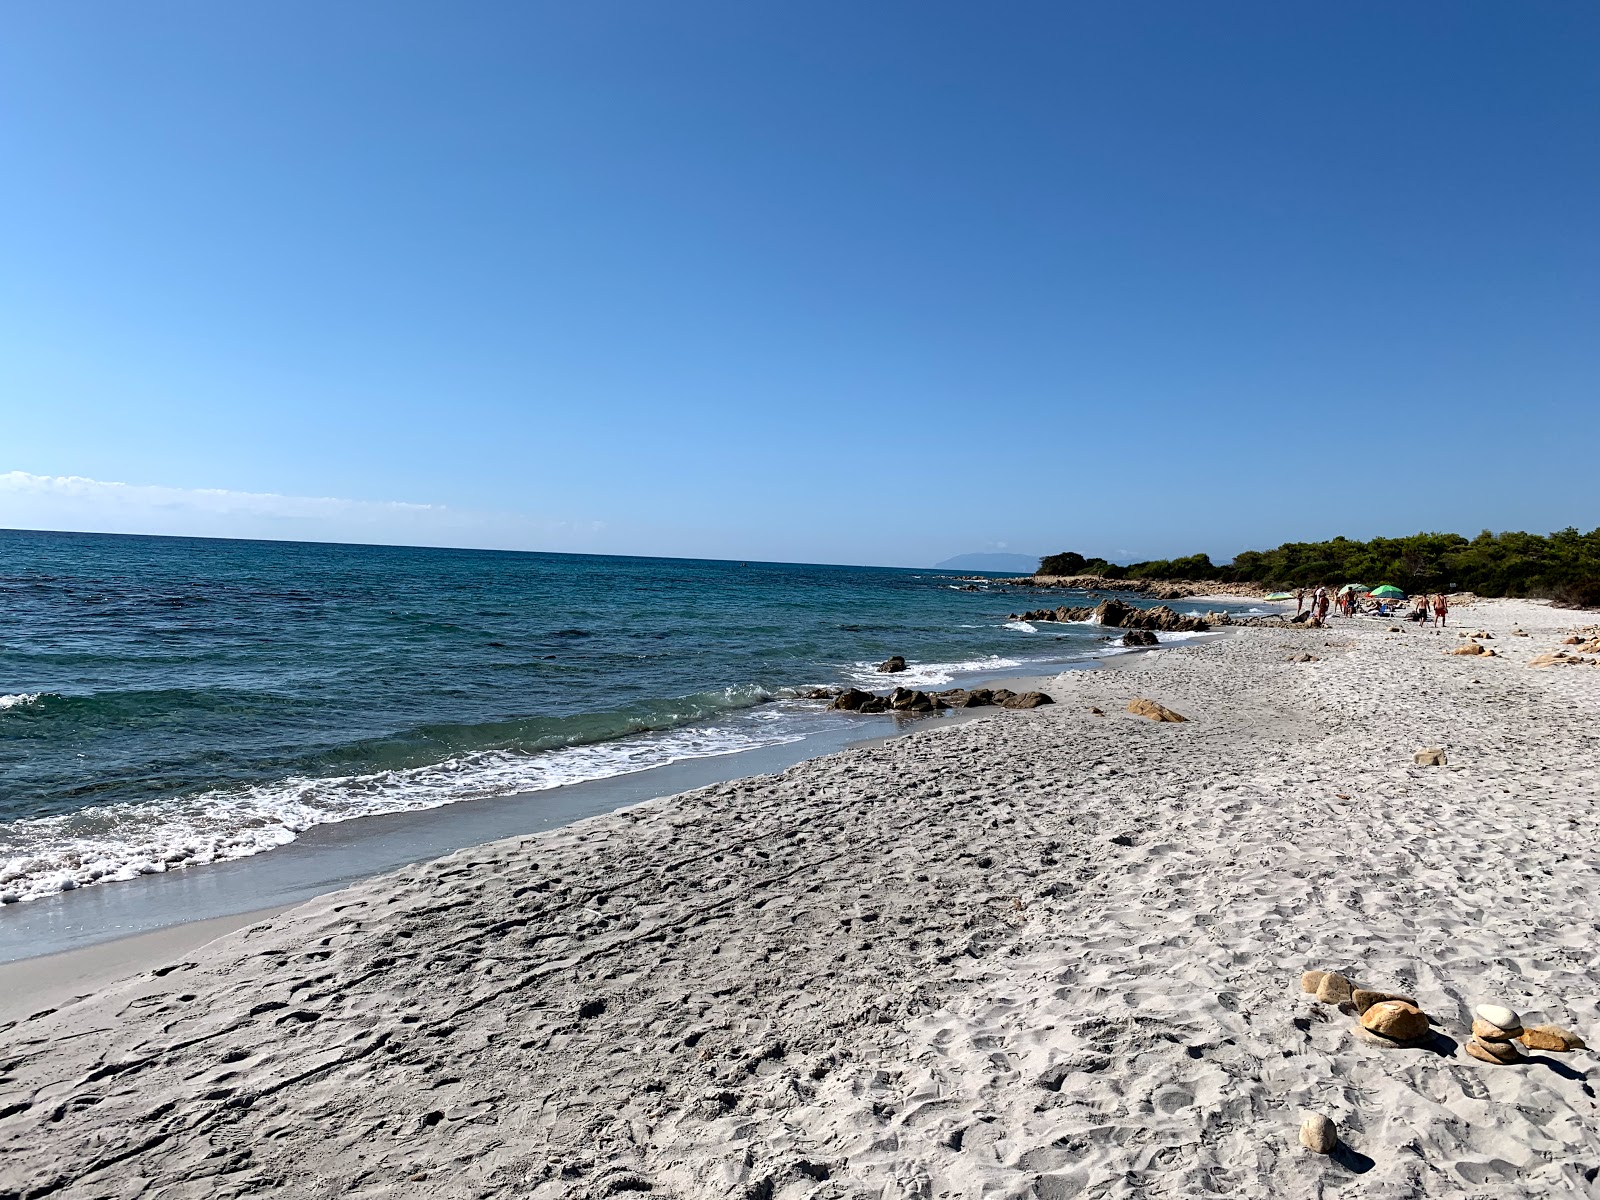 Foto av Spiaggia Pedra Marchesa med lång rak strand